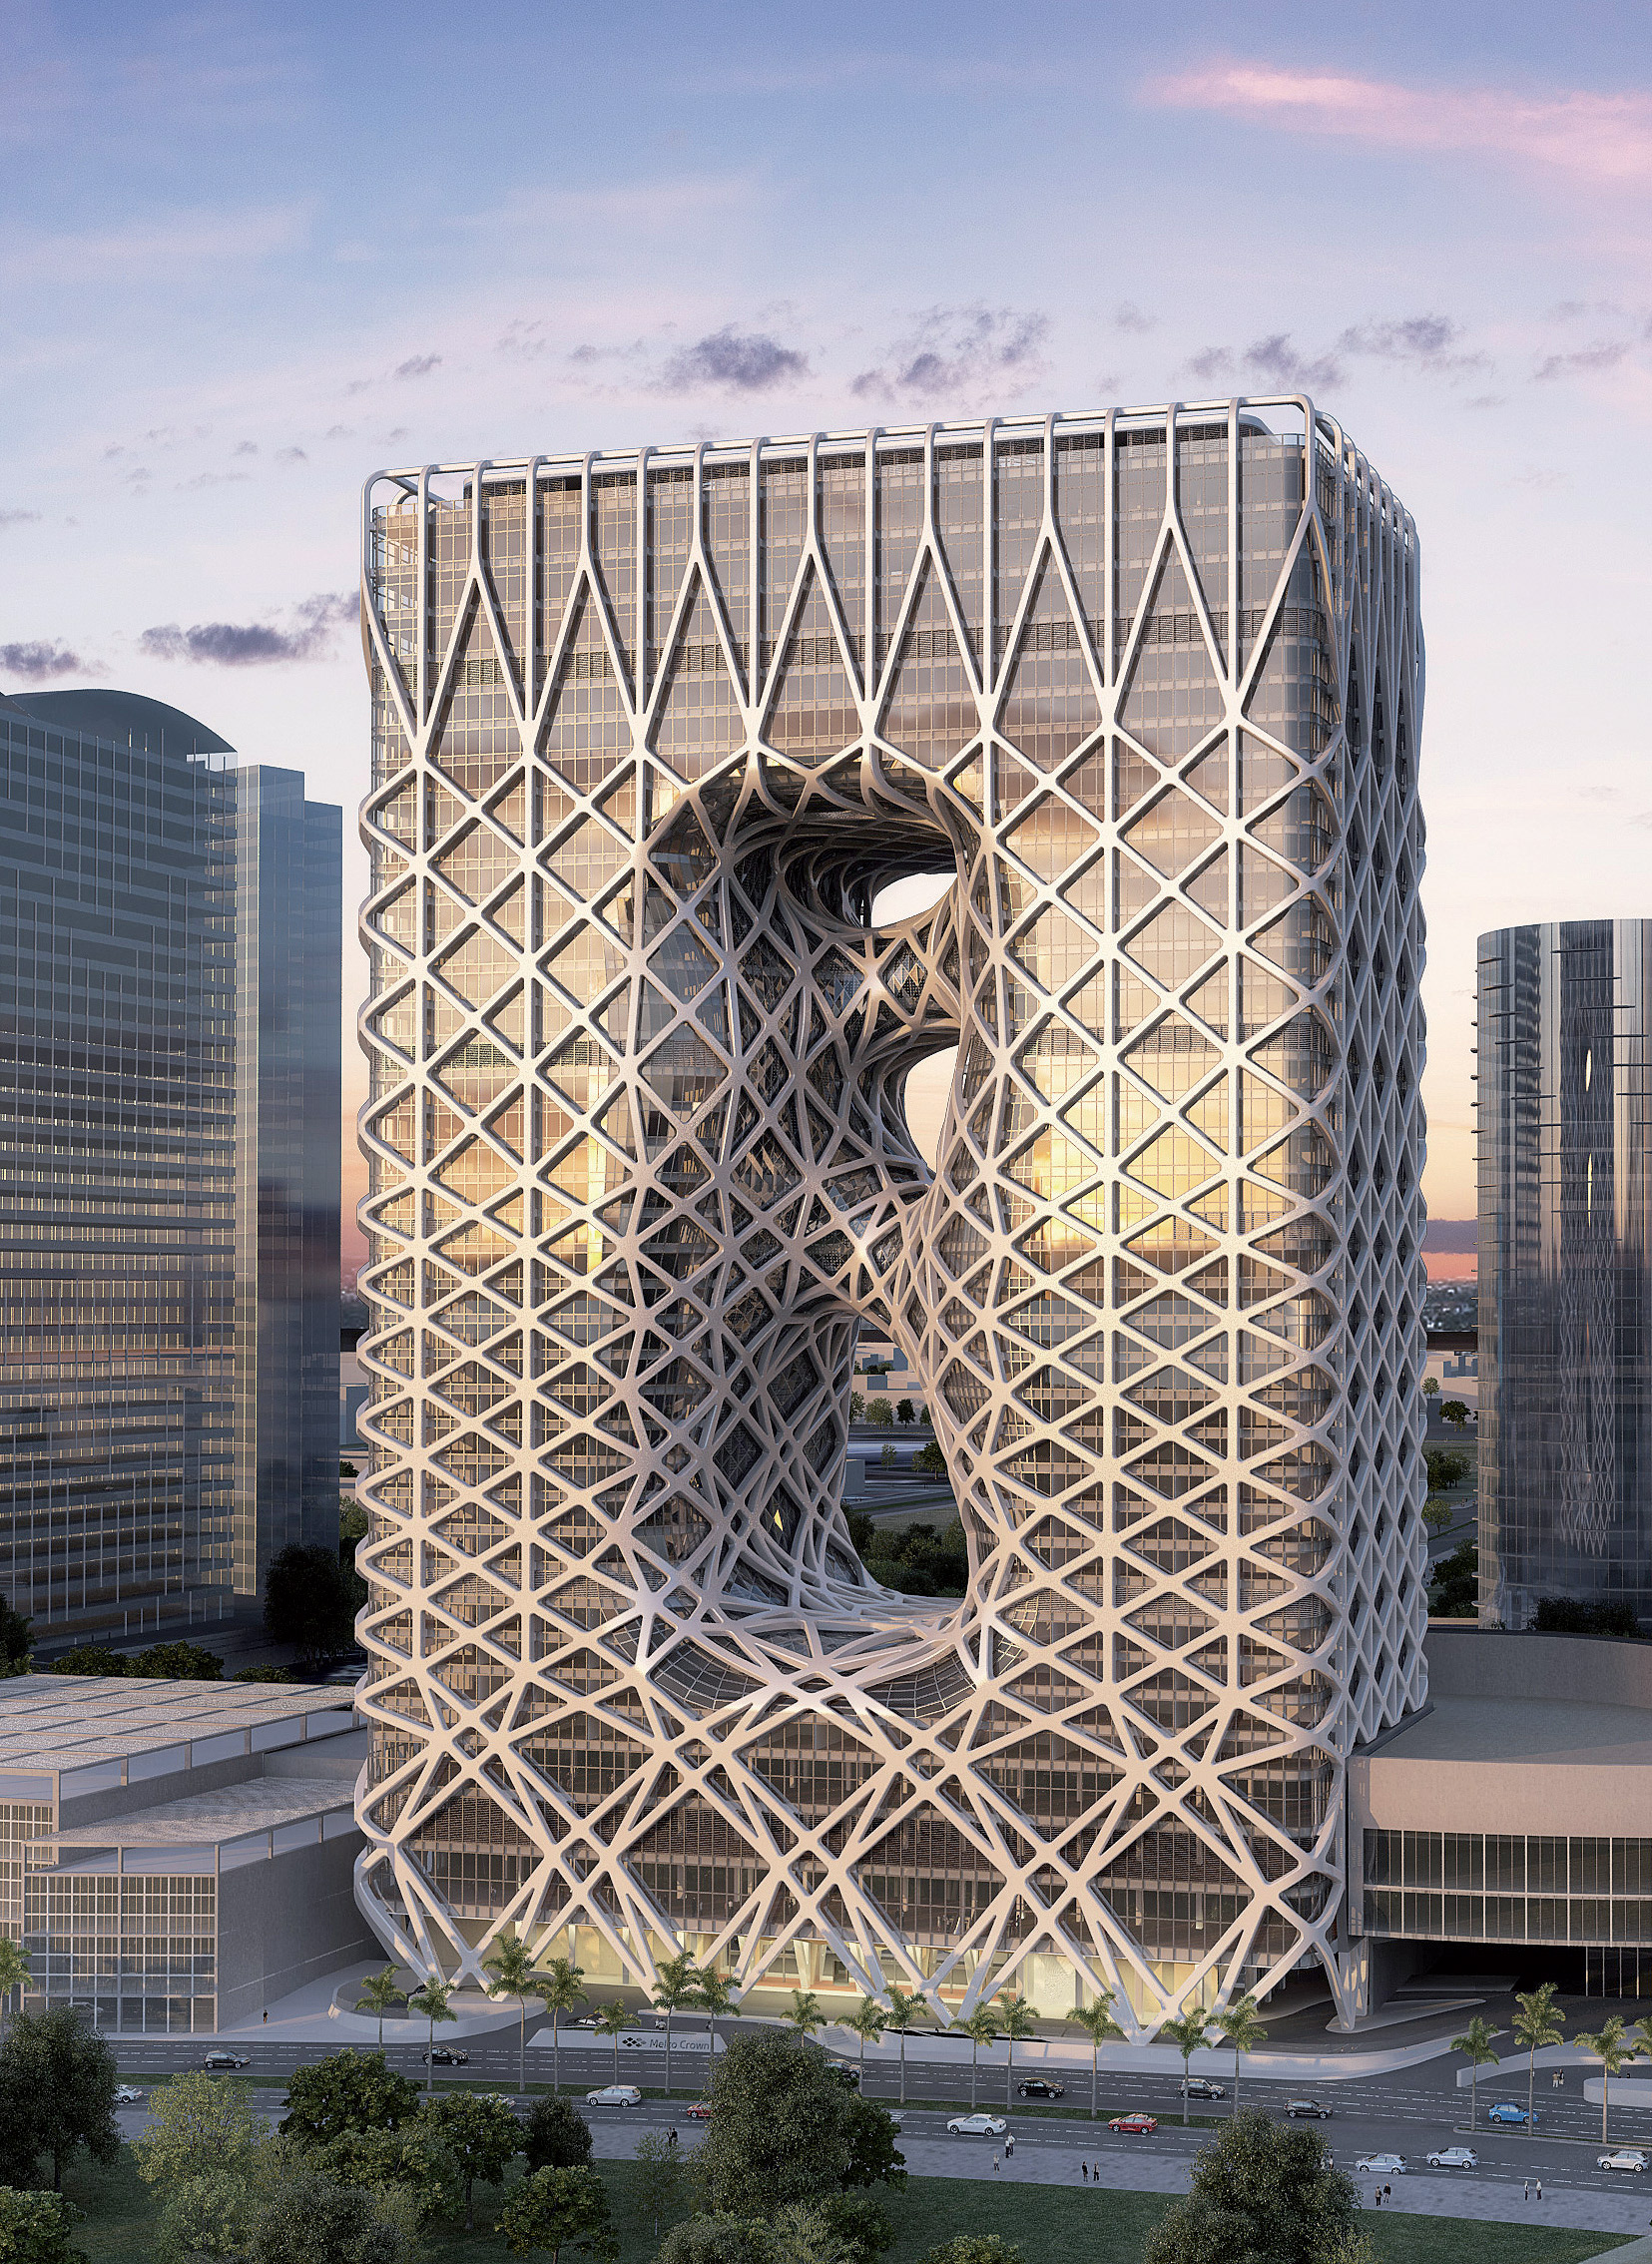 Päťhviezdičkový Hotel Tower je situovaný v oblasti kasín a hotelov s názvom City of Dreams